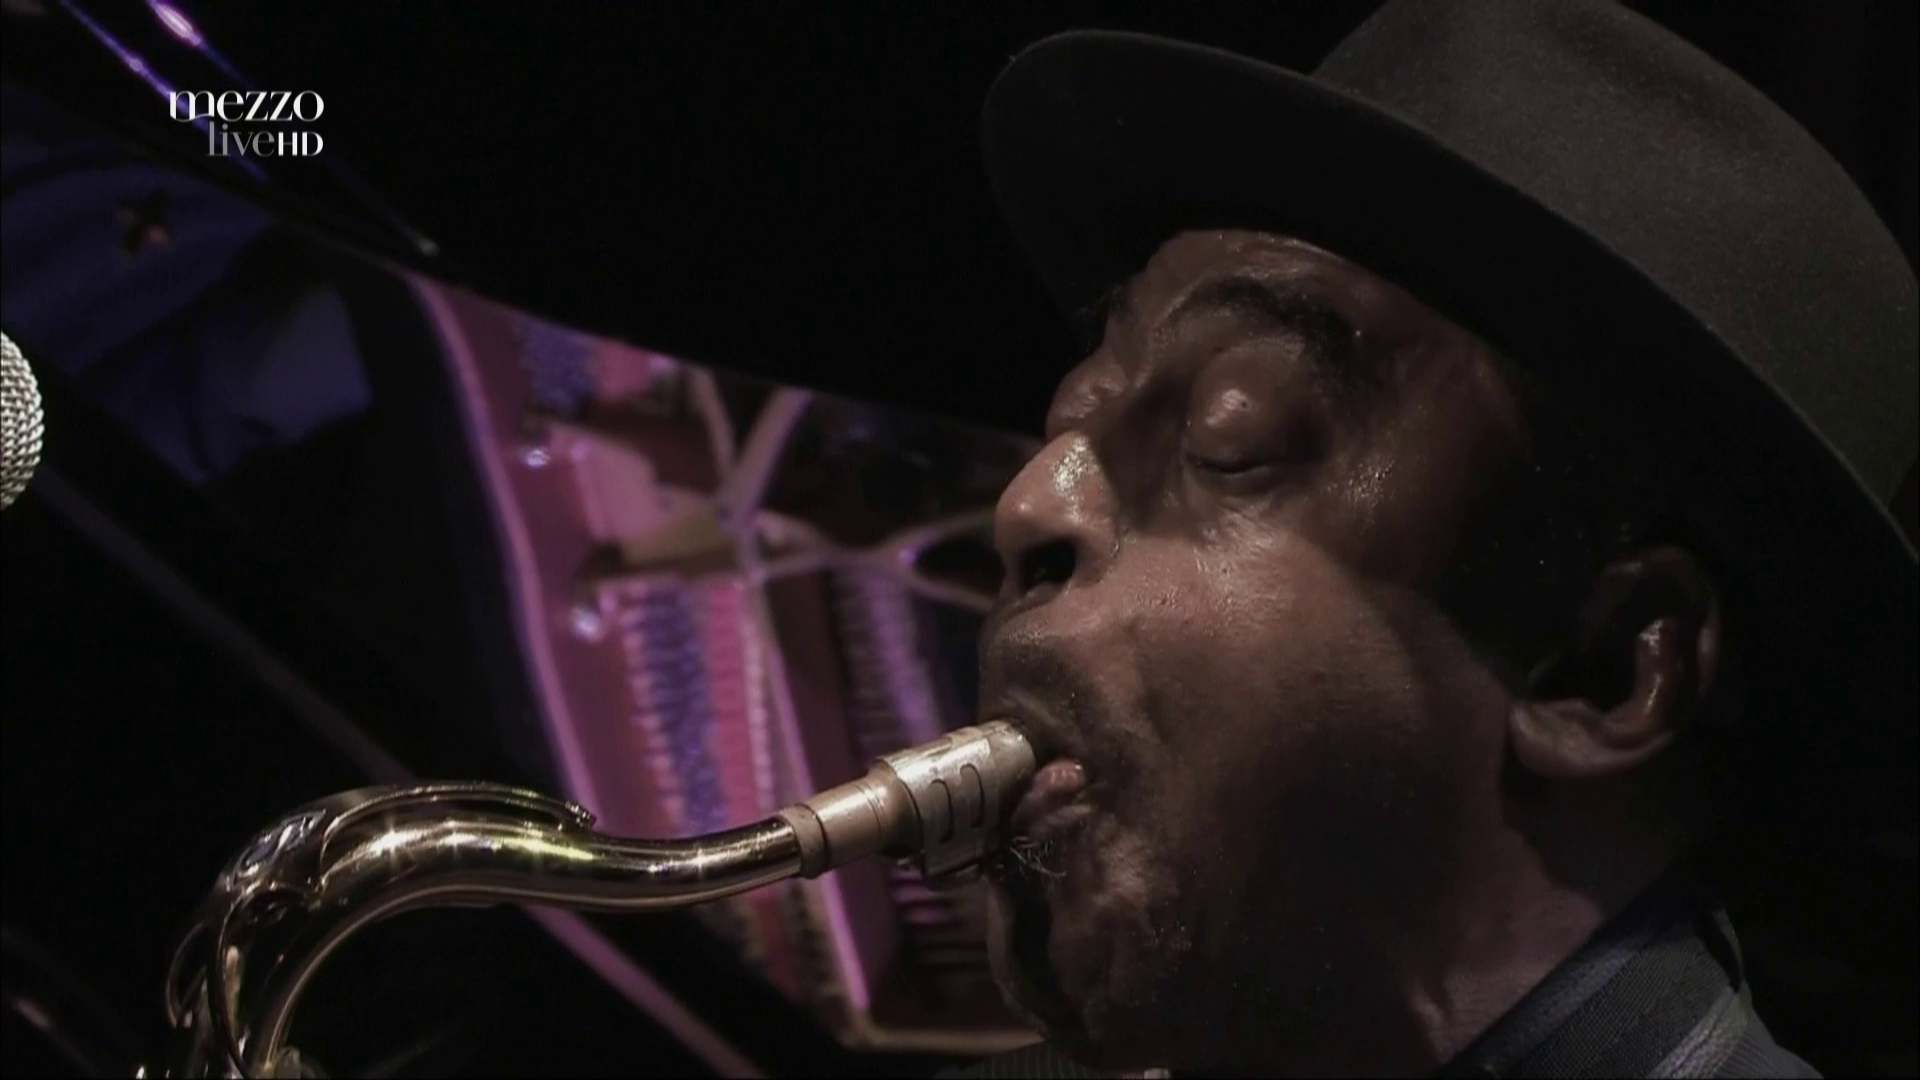 2011 Archie Shepp & Joachim Kuhn - Live at Jazzdor Festival [HDTV 1080p] 1